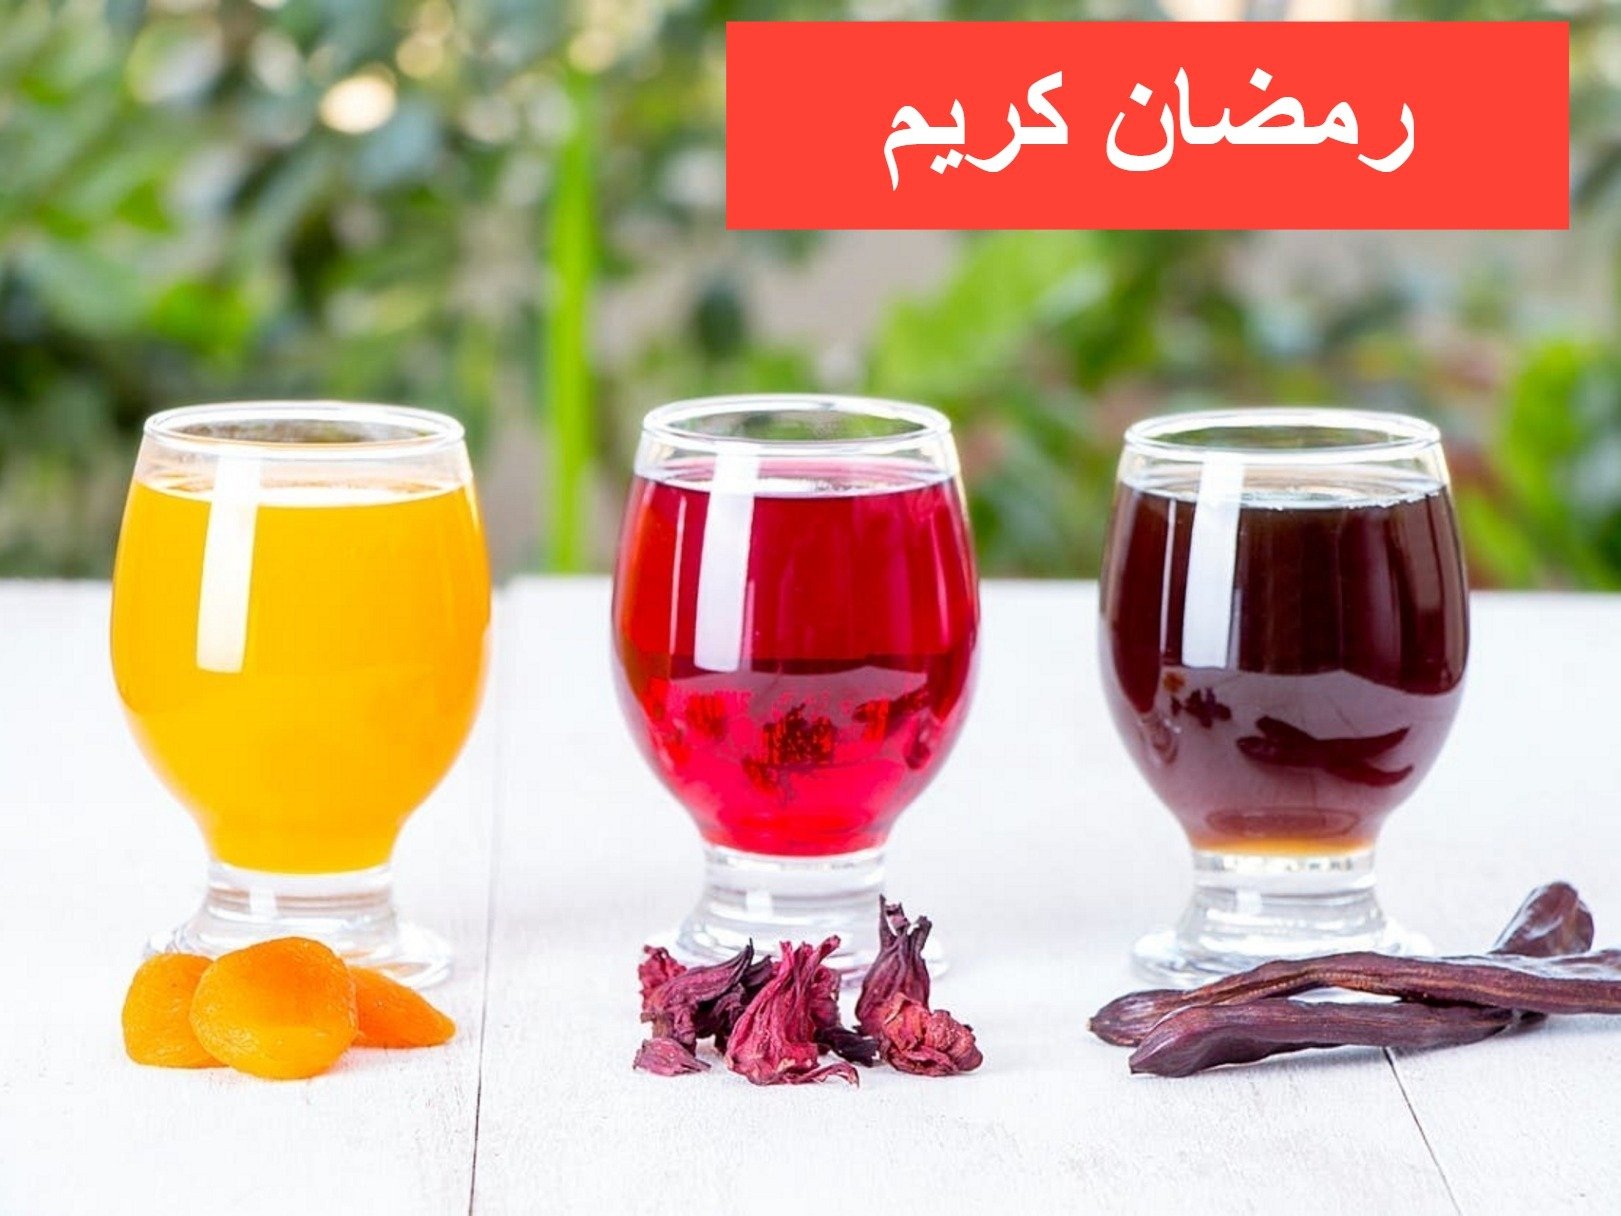 طريقة عمل مشروبات رمضان